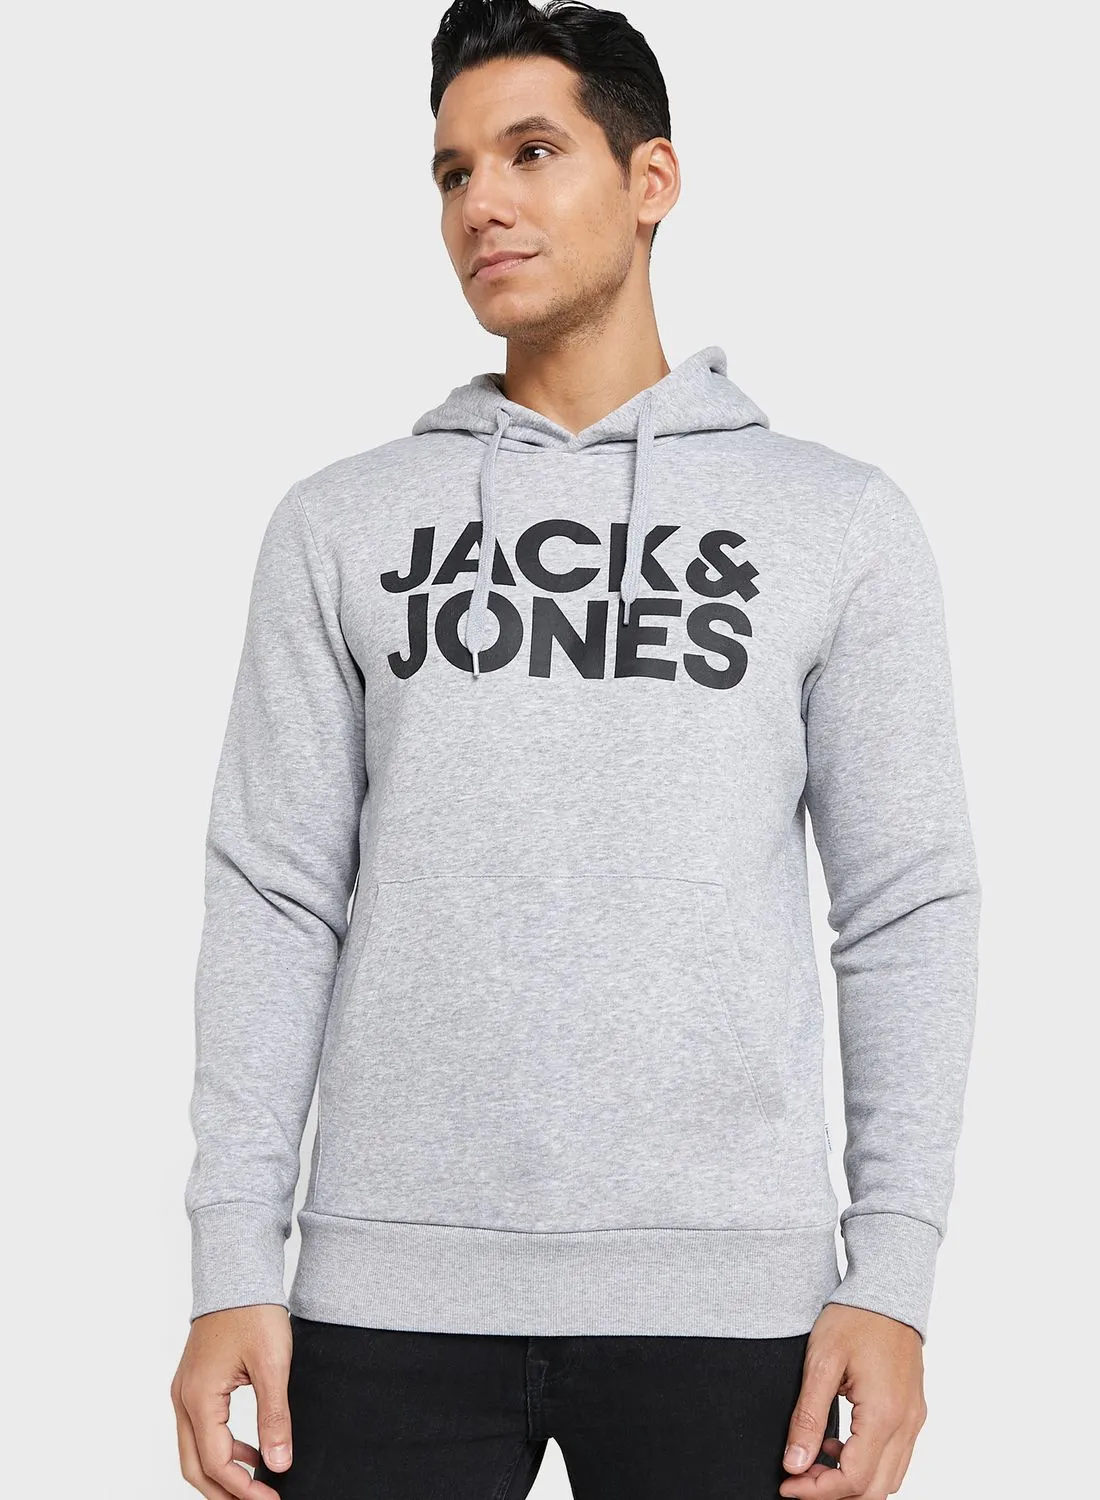 JACK & JONES Logo Printed Hoodie